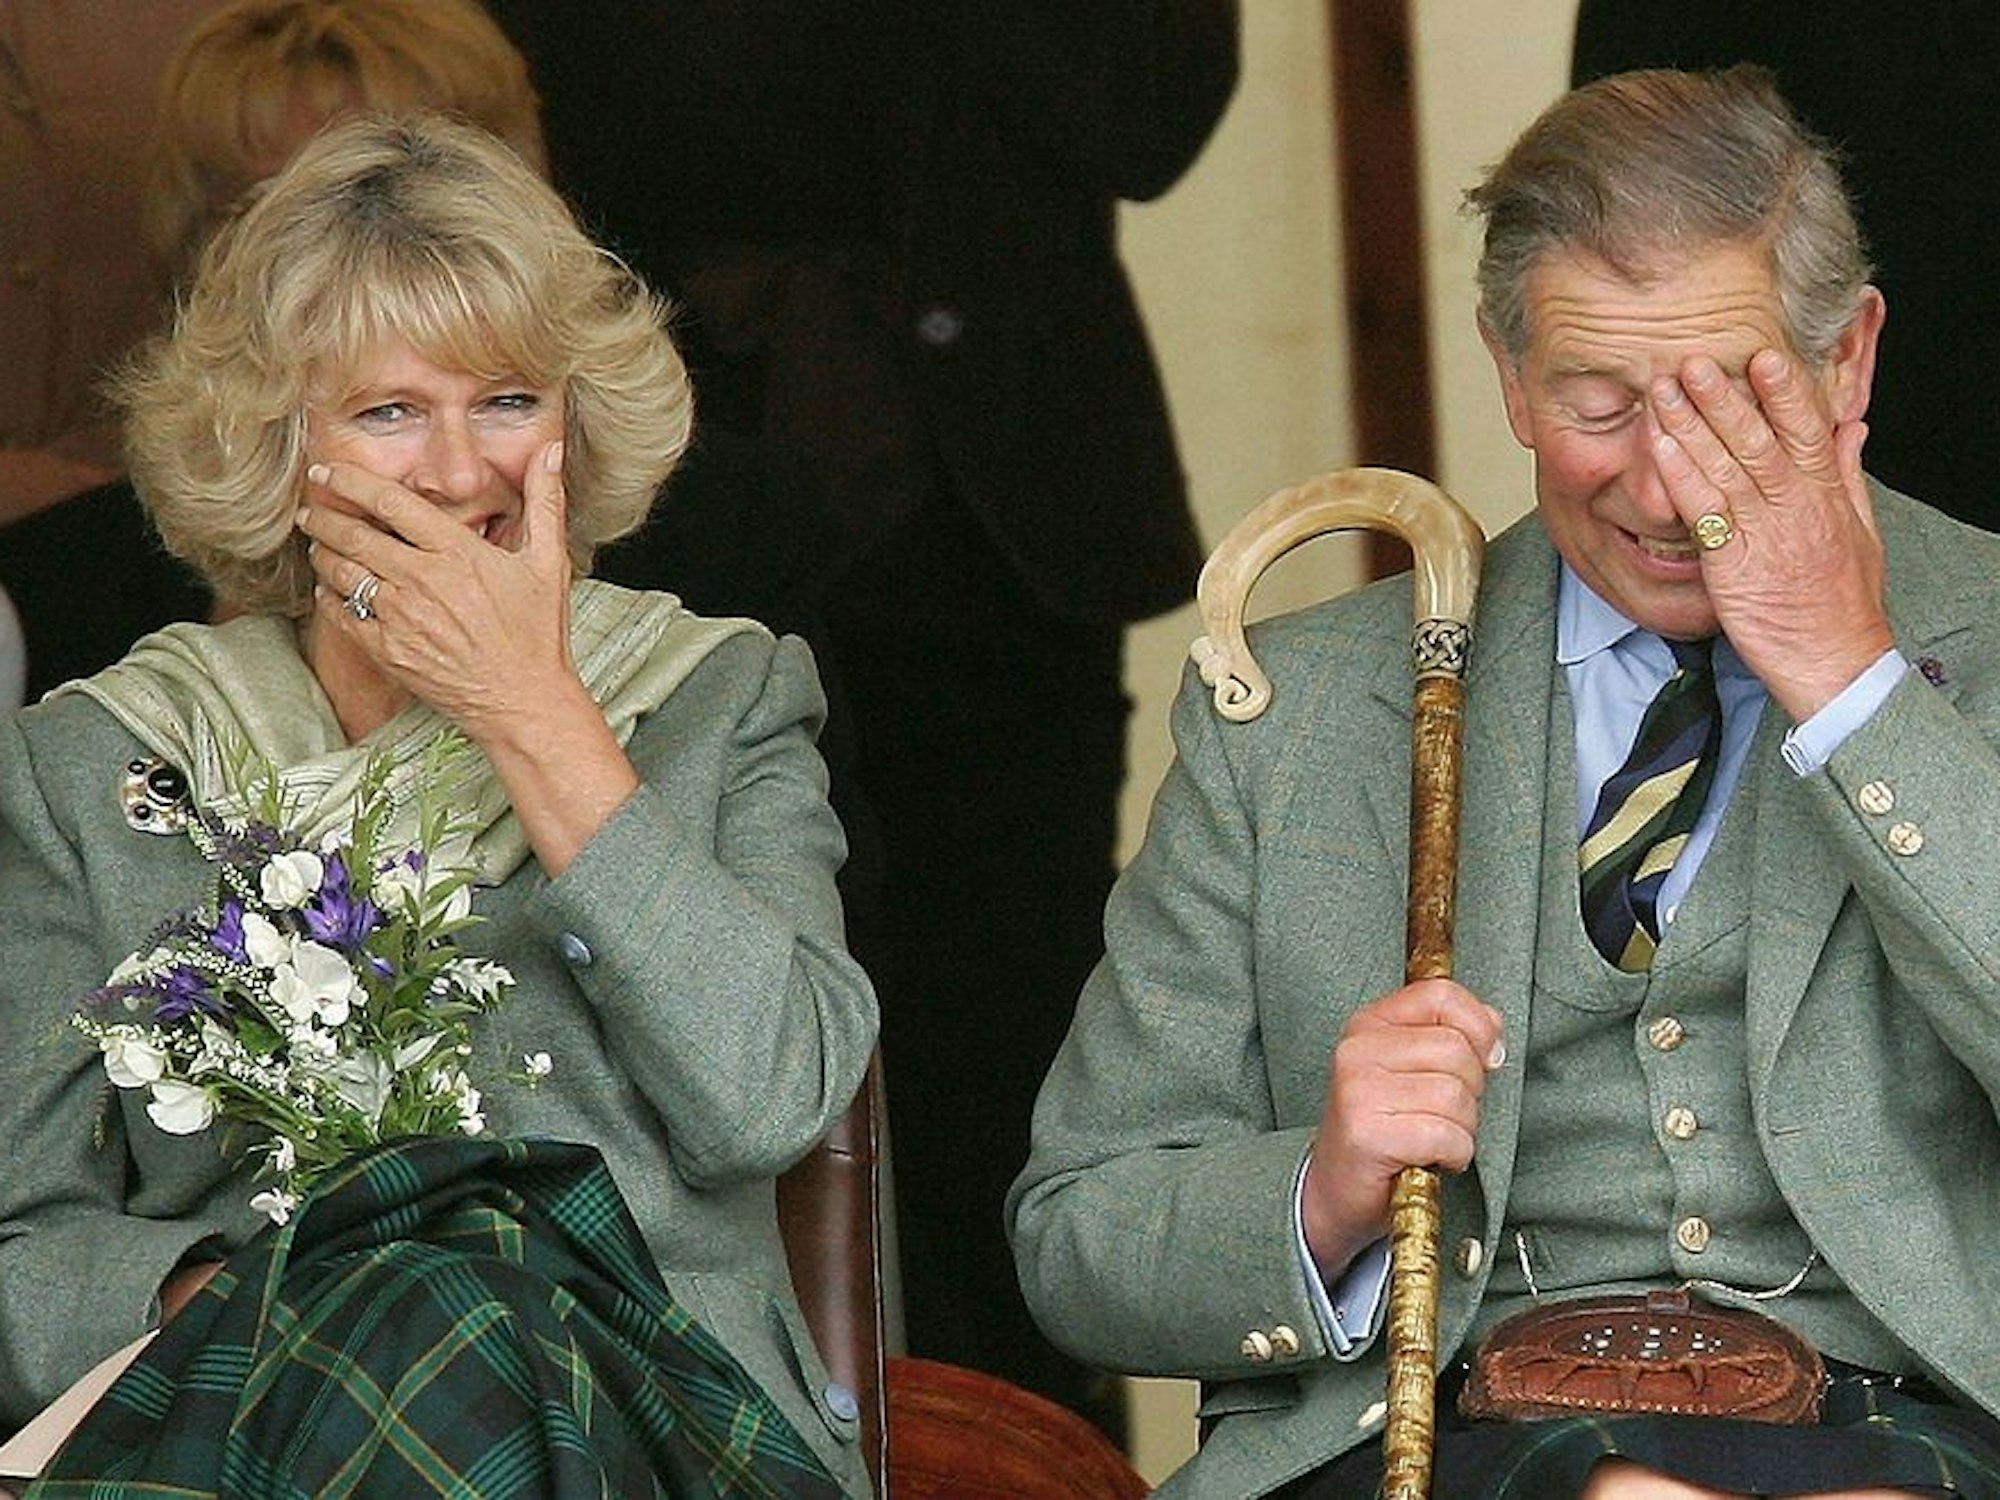 König Charles III. und Queen Camilla amüsieren sich königlich bei einer Folklore-Veranstaltung in Schottland 2005.